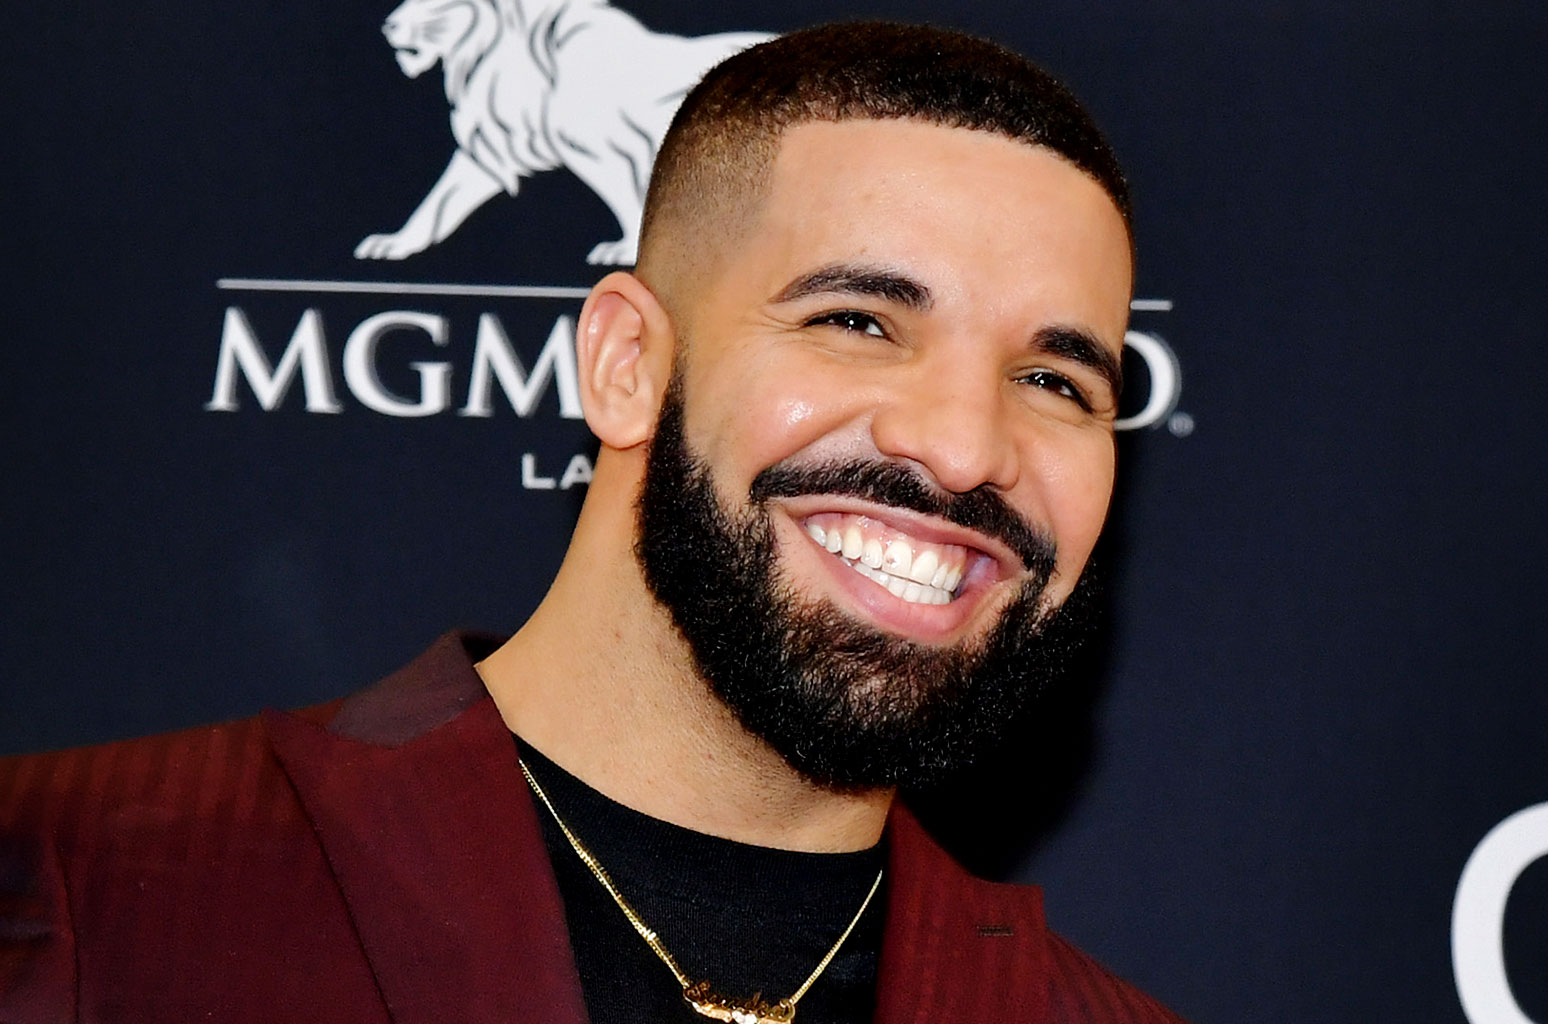 Drake recebe vaias durante show em Los Angeles e abandona o palco TV Foco